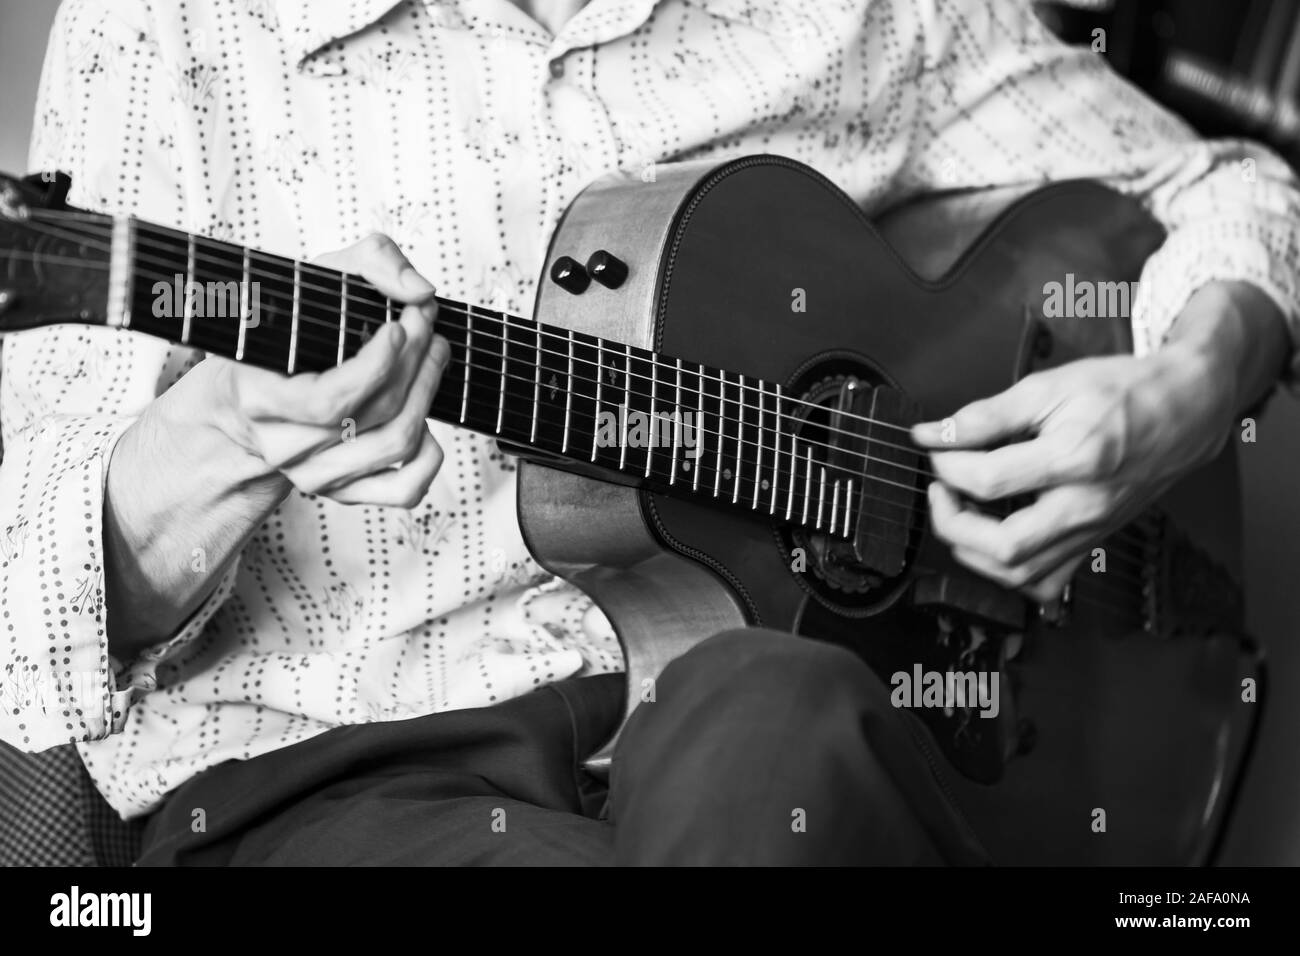 Un guitariste acoustique, close-up photo avec soft focus sélectif. Noir et blanc stylisé rétro Banque D'Images